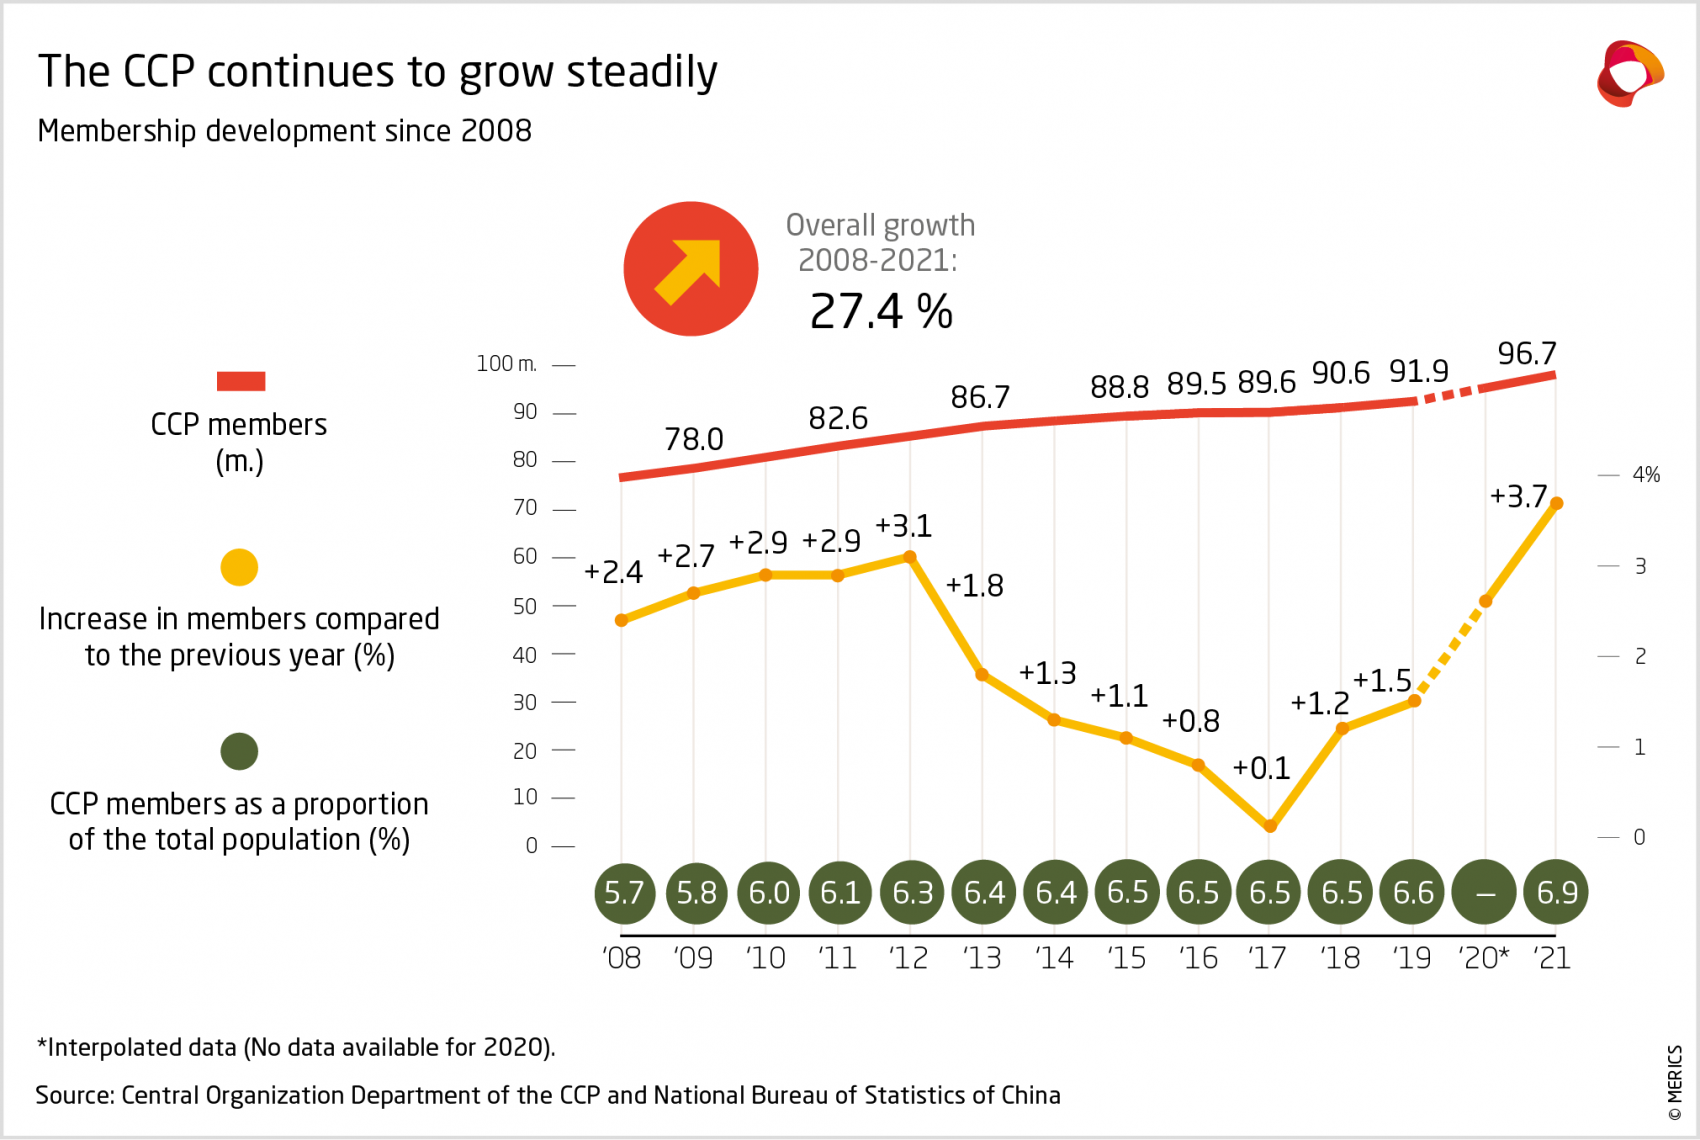 CCP Membership development since 2008